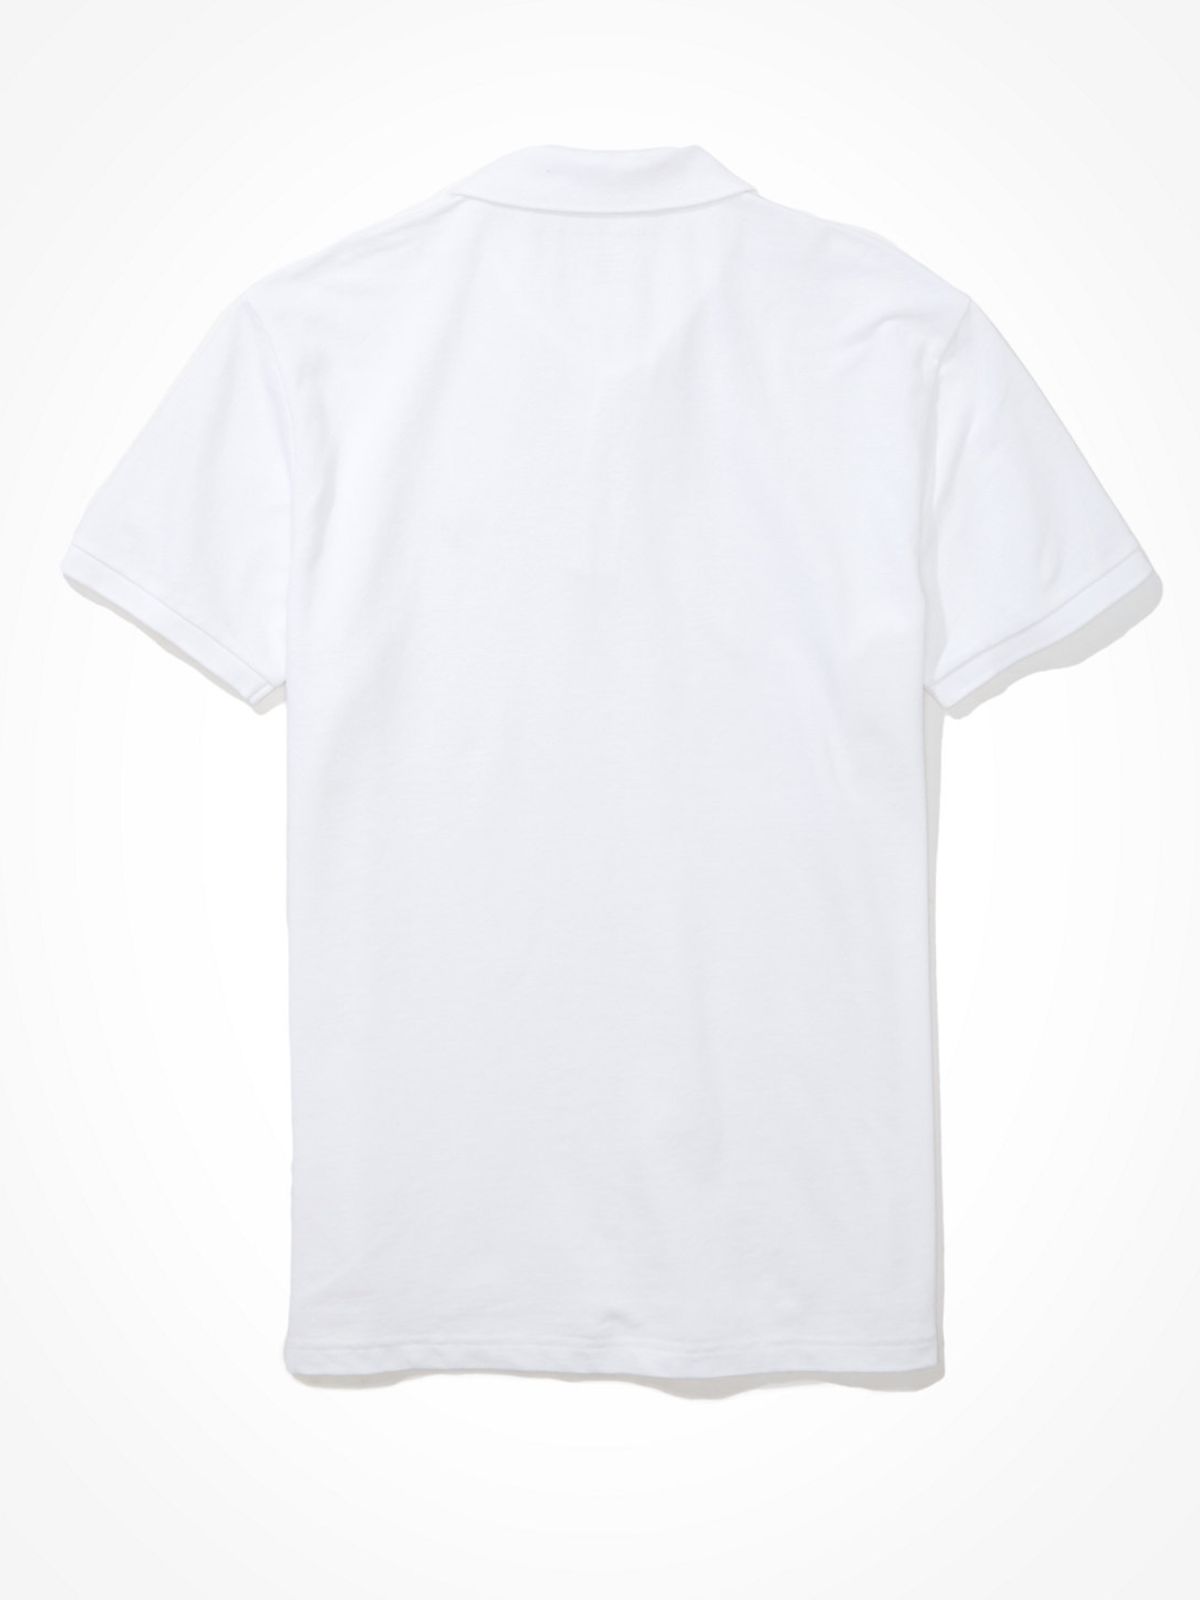  חולצת פולו עם רקמת לוגו / גברים של AMERICAN EAGLE